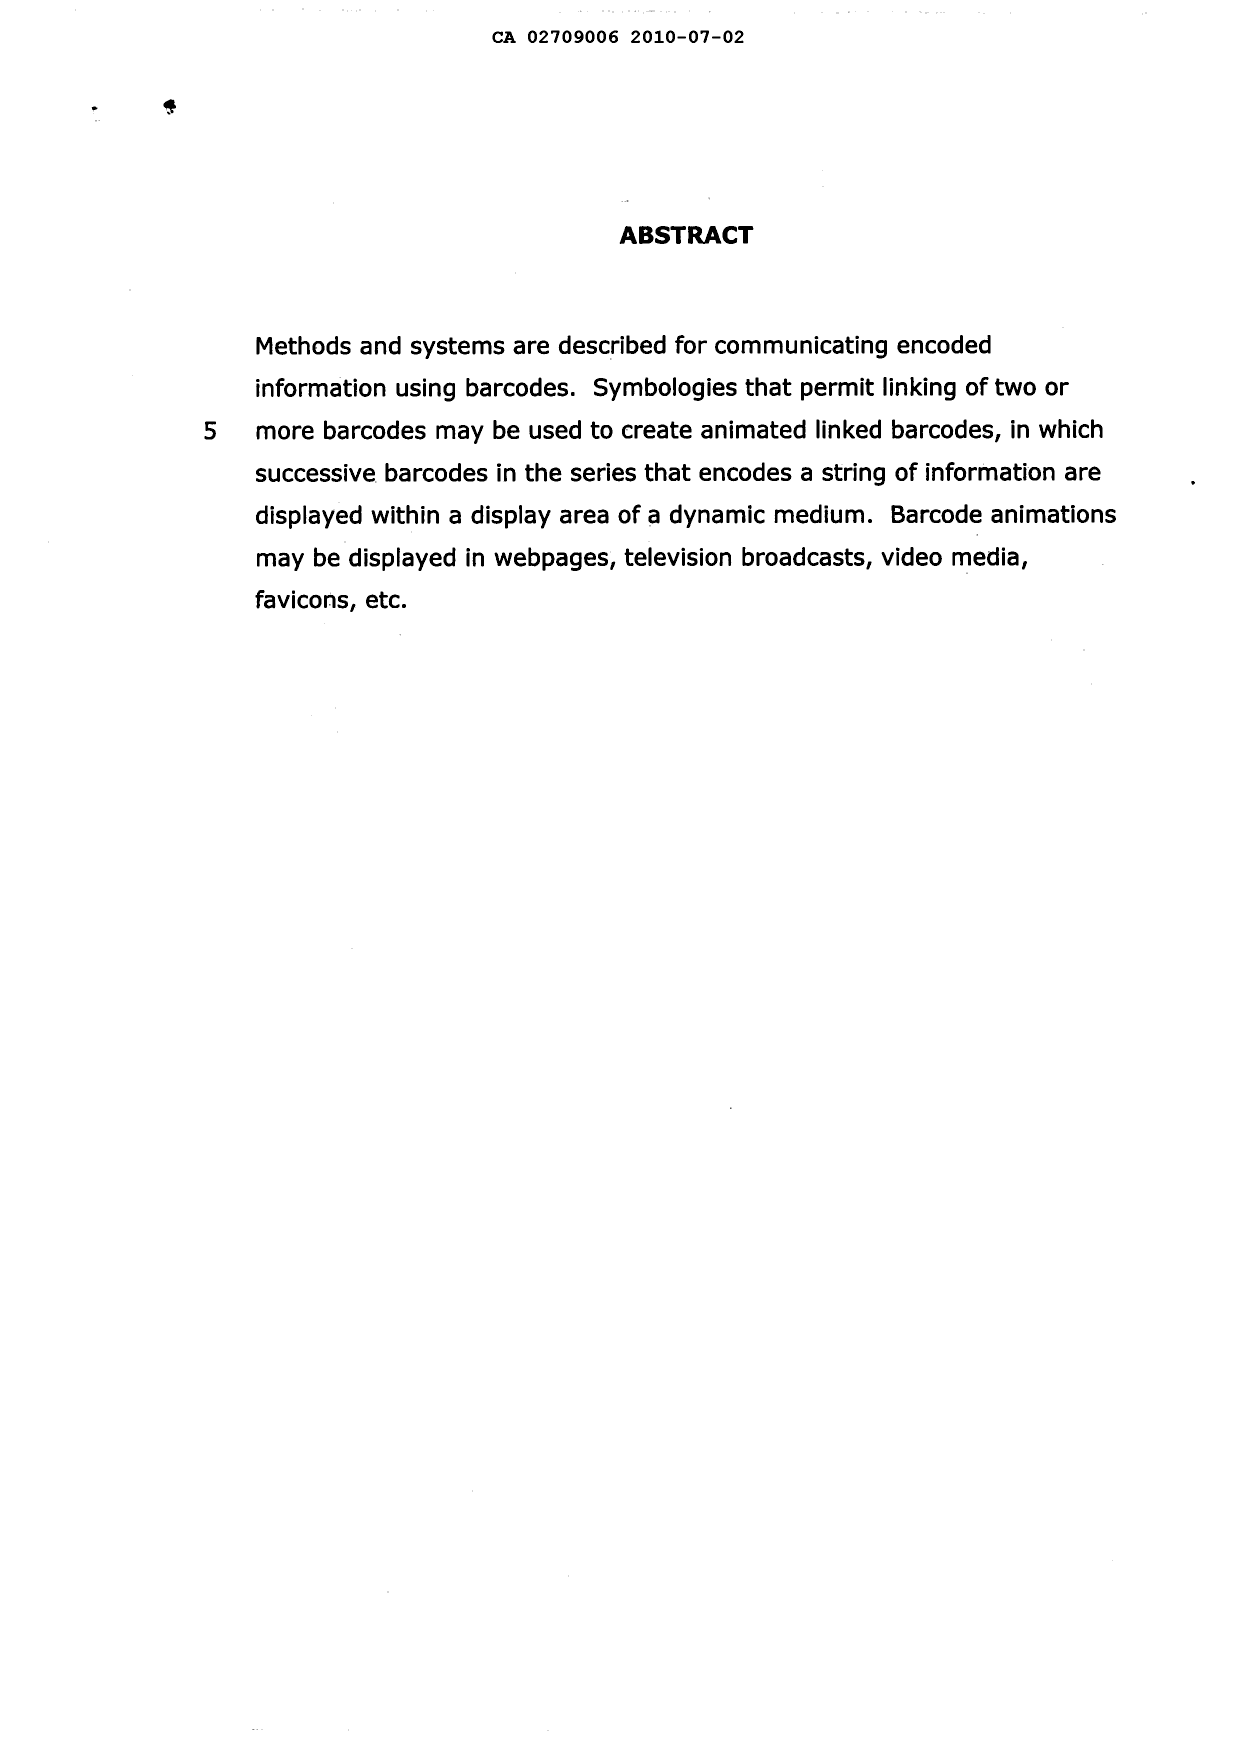 Document de brevet canadien 2709006. Abrégé 20100702. Image 1 de 1